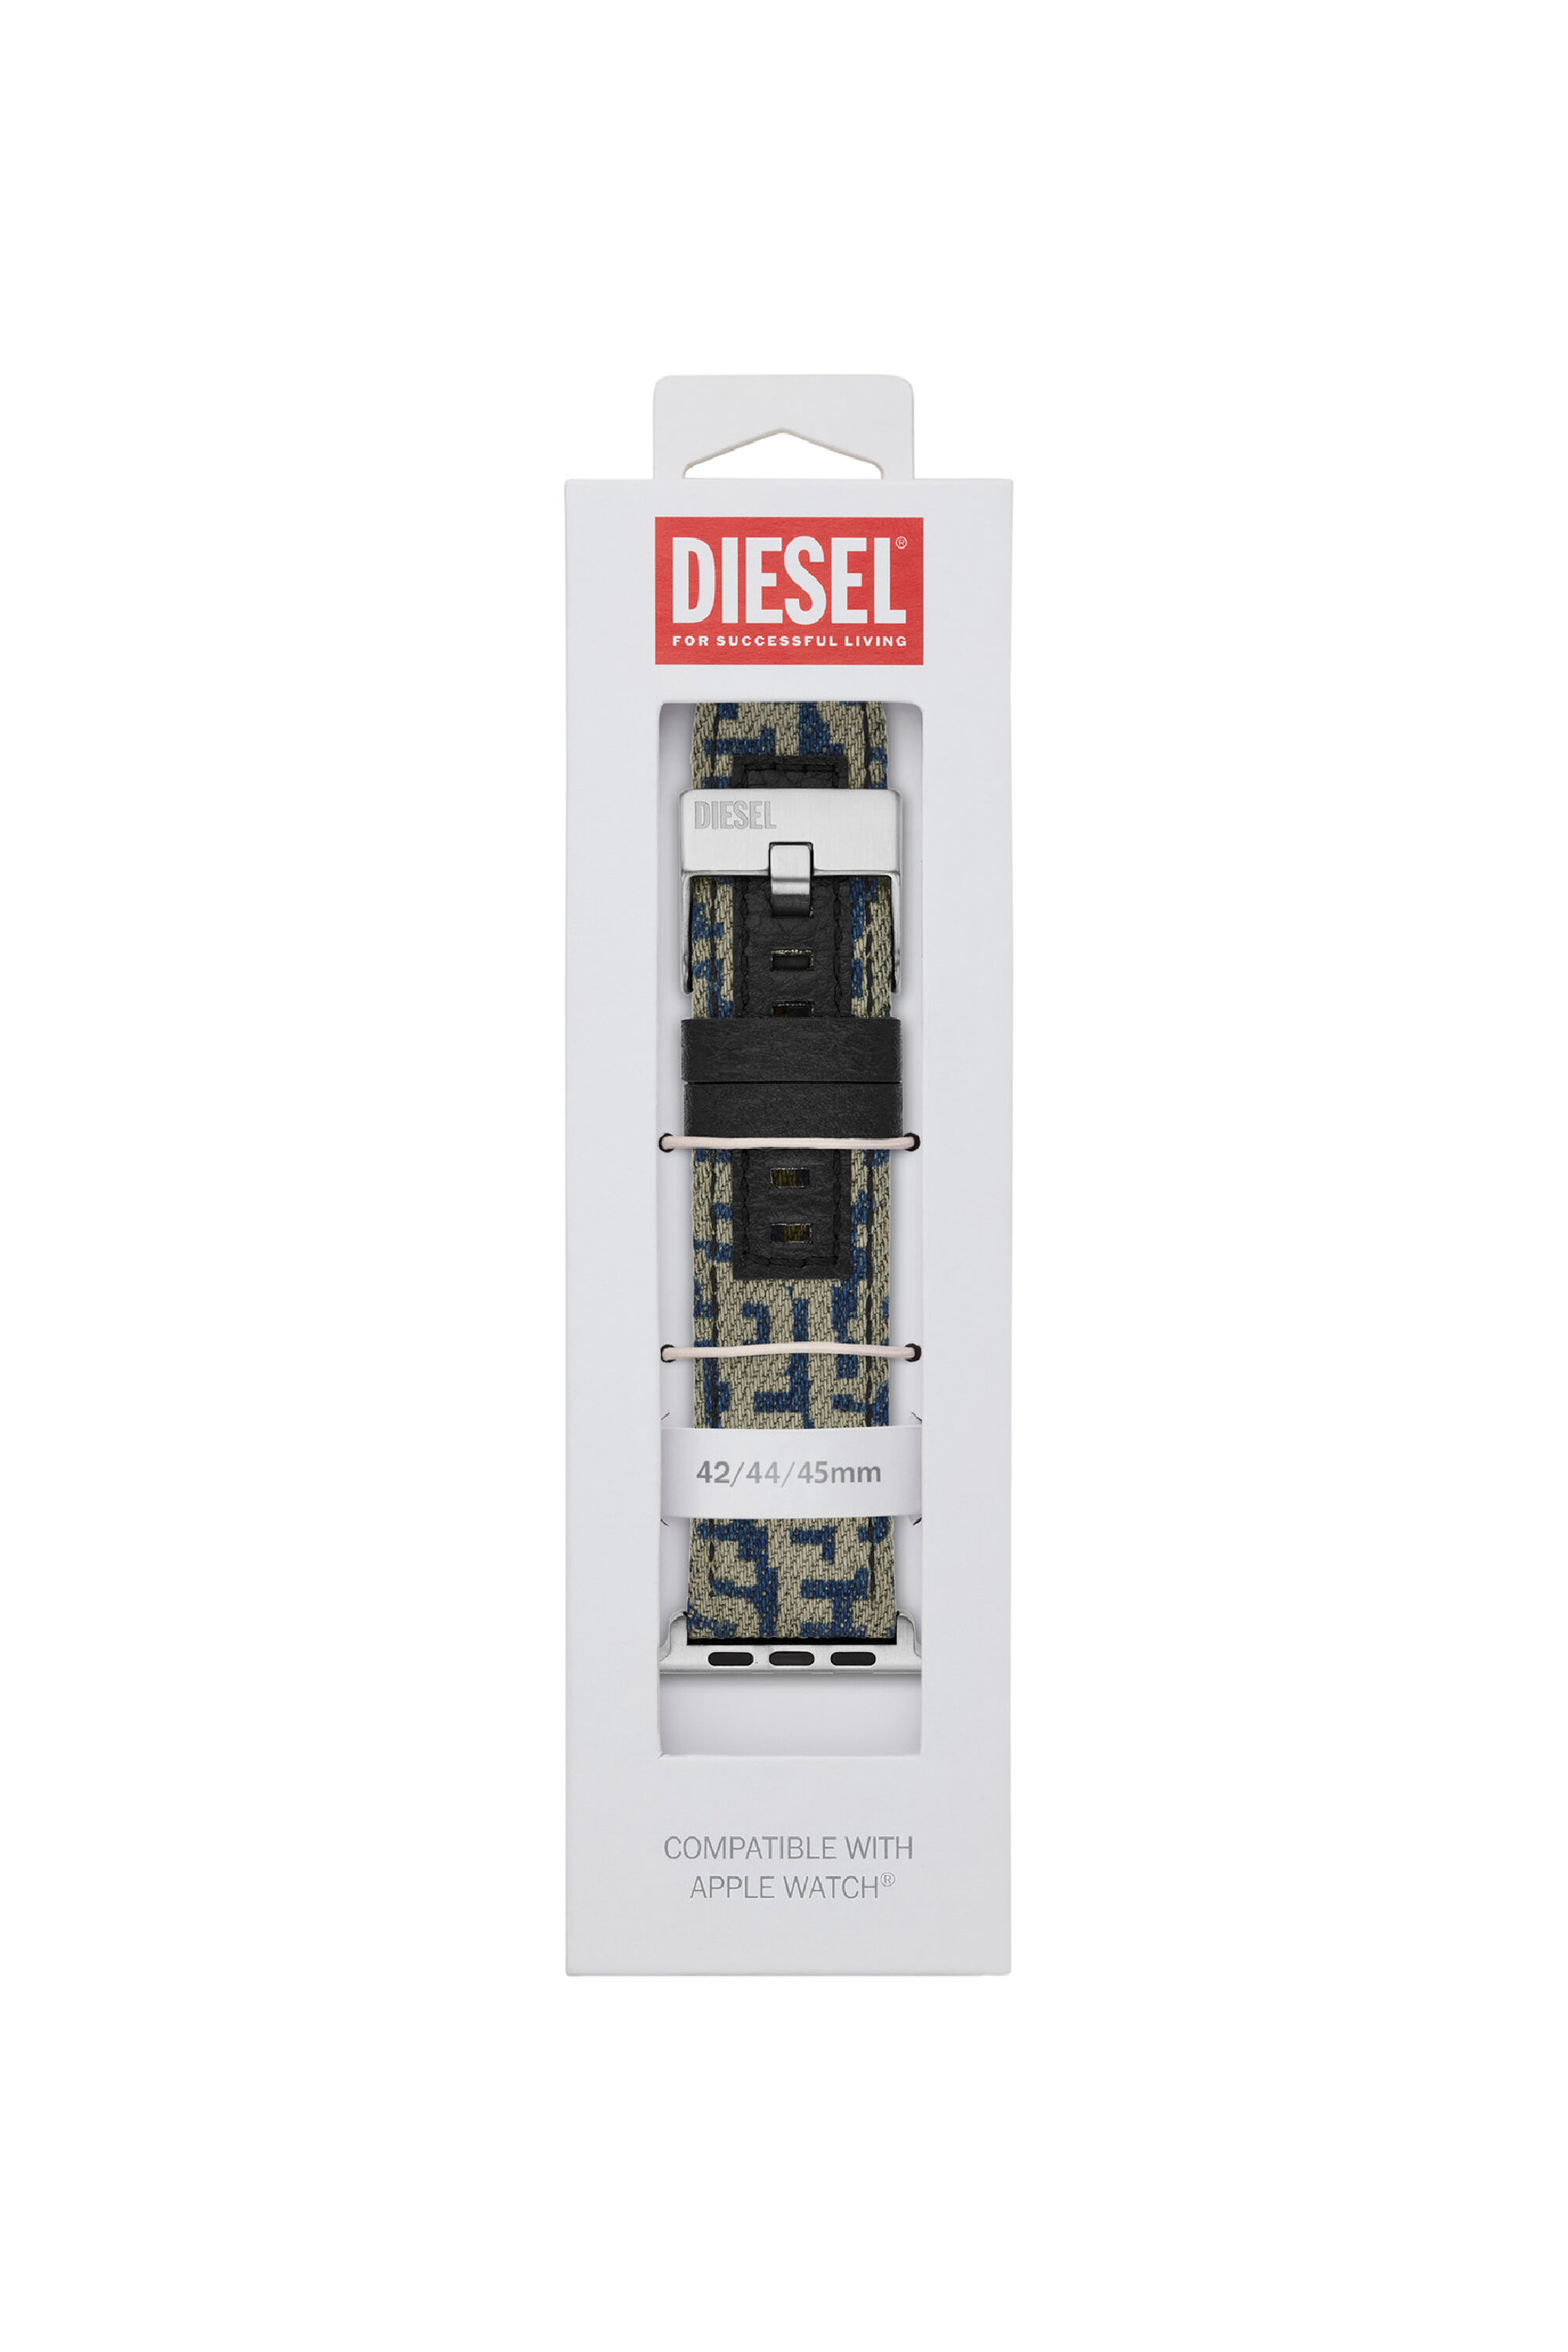 Diesel - DSS0013, Blue - Image 2